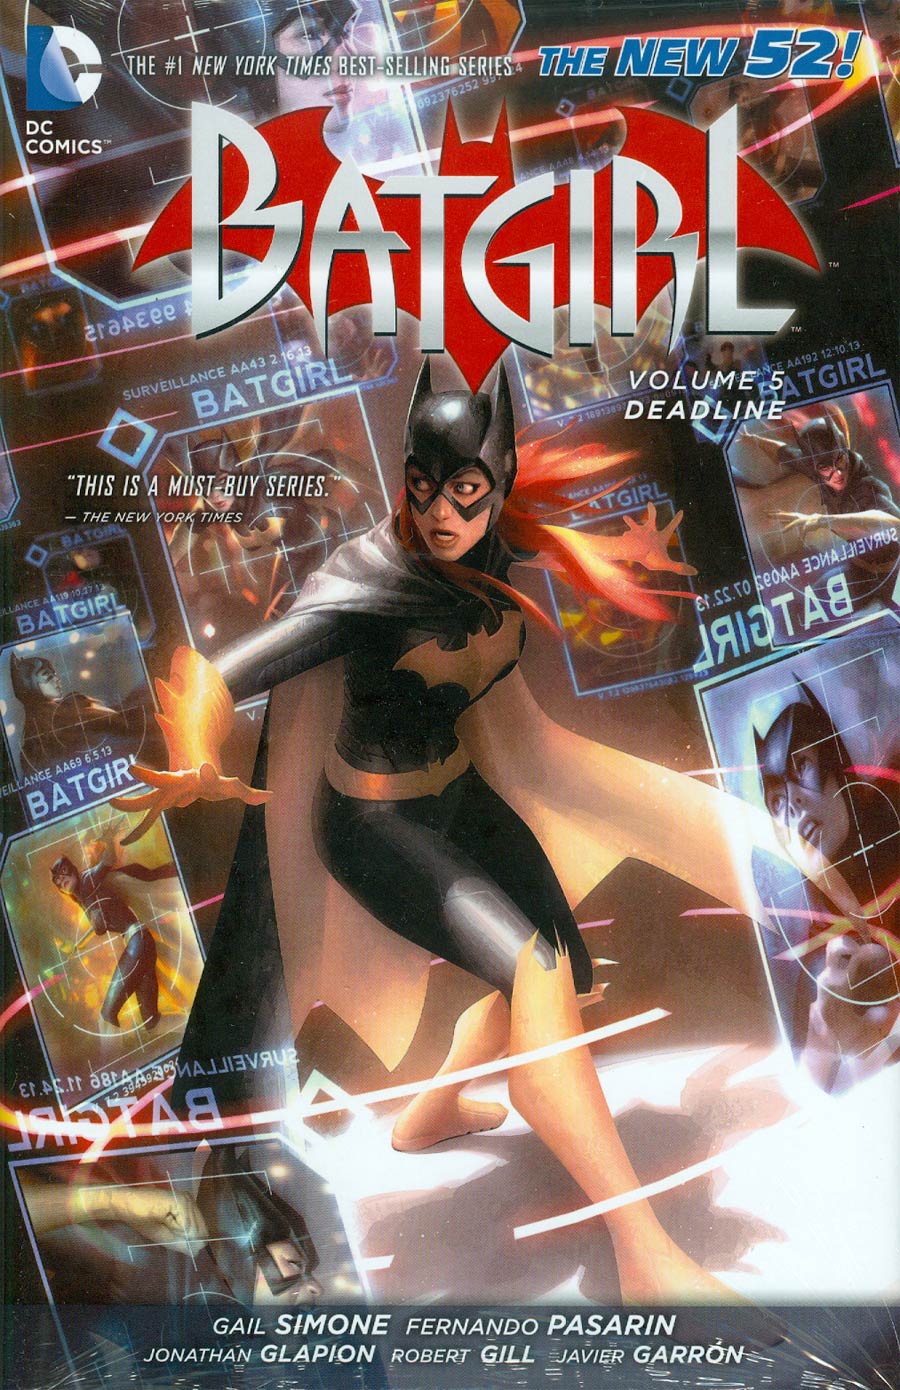 Batgirl (New 52) Vol 5 Deadline HC